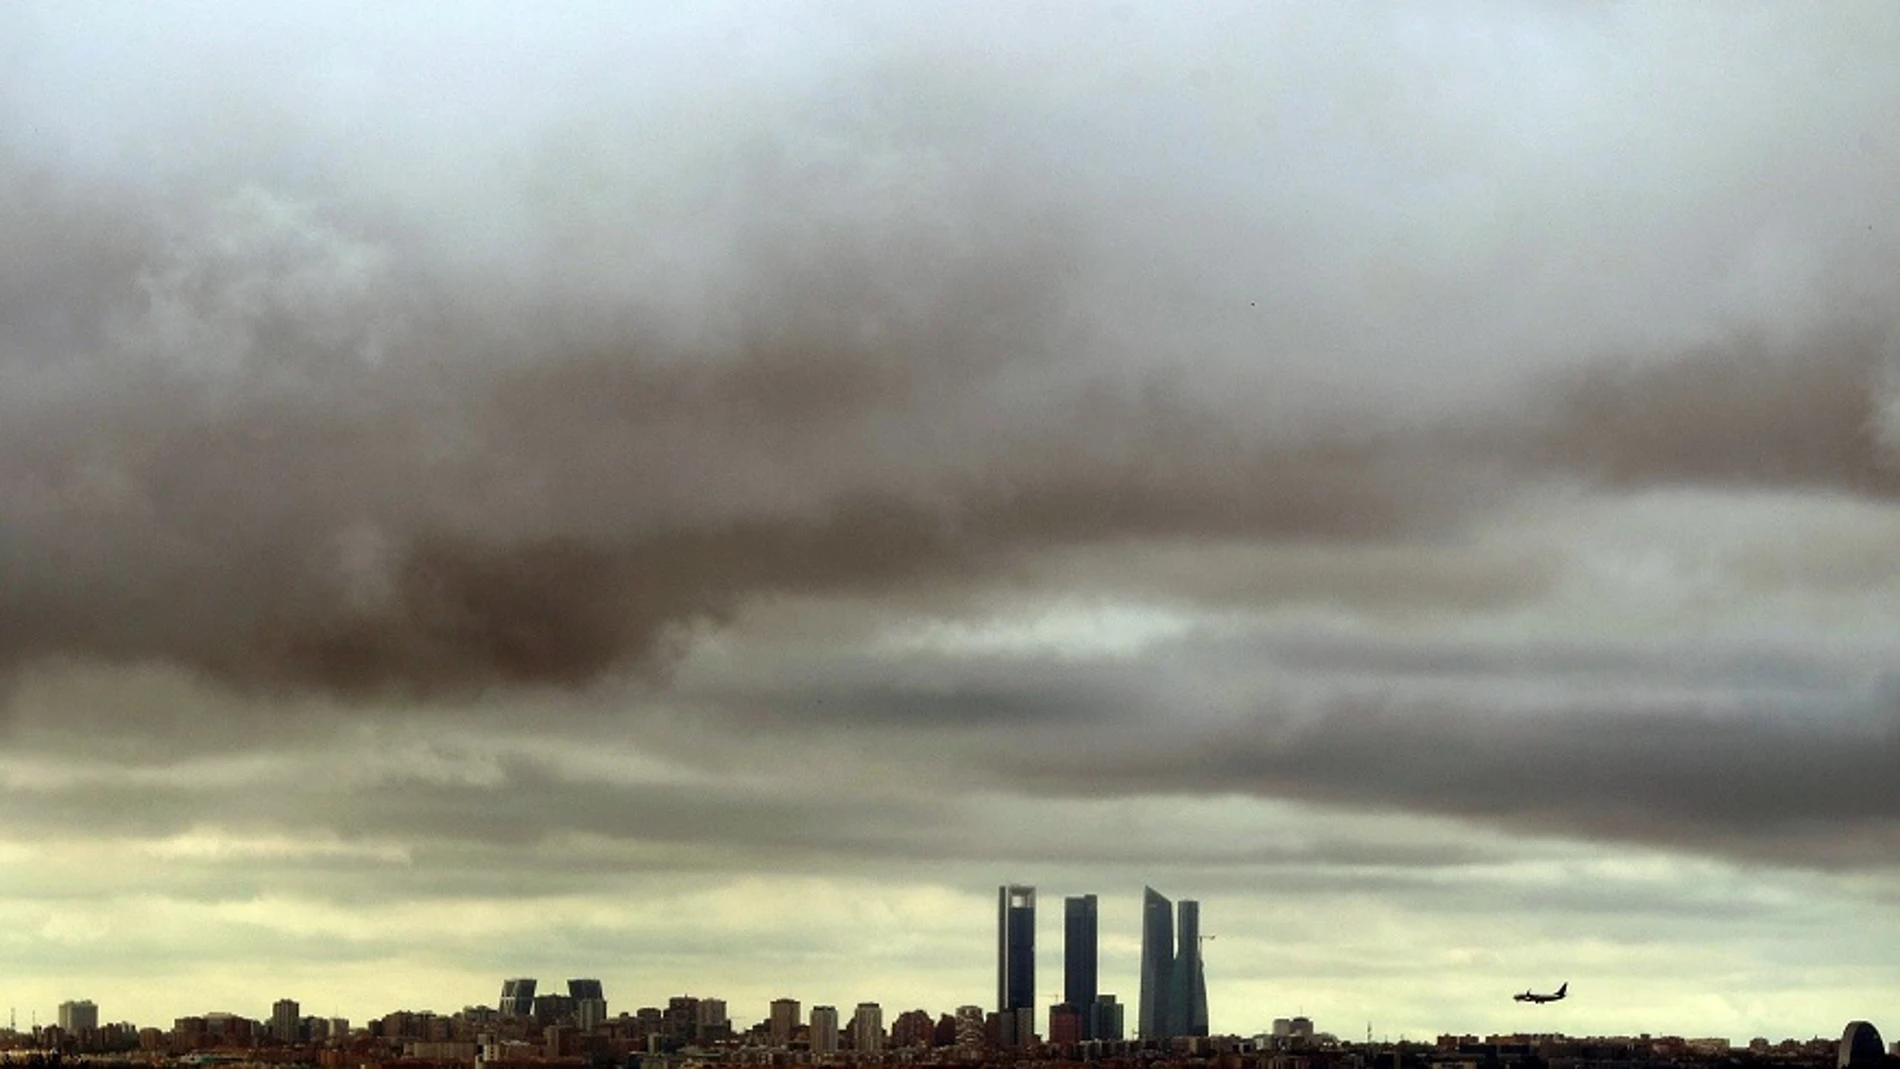 Elecciones generales 2019: Imagen del cielo nublado en Madrid